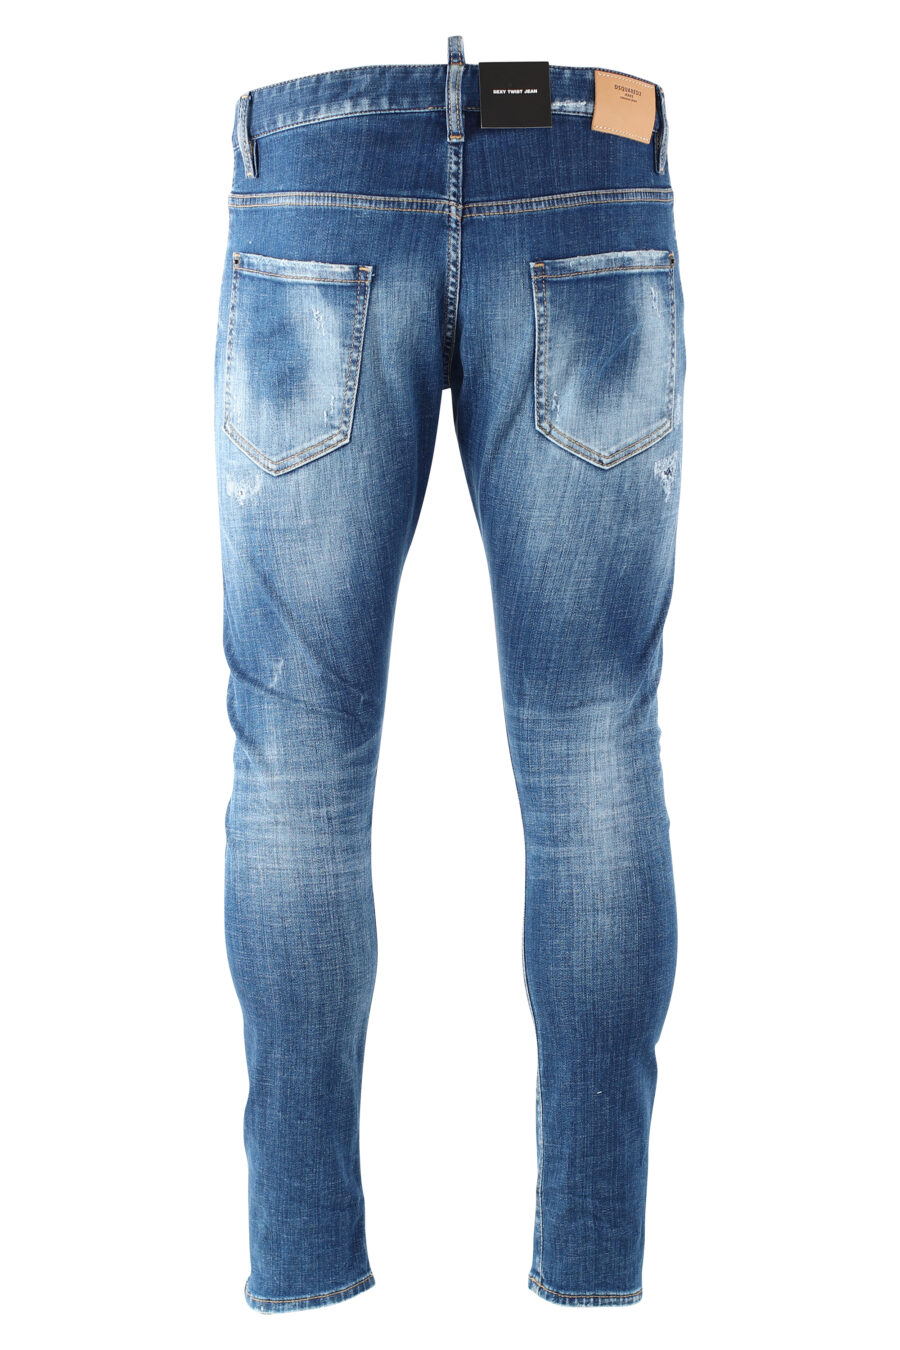 Sexy Twist Denim Jeans "sexy twiste jean" blau mit Rissen getragen - IMG 9697